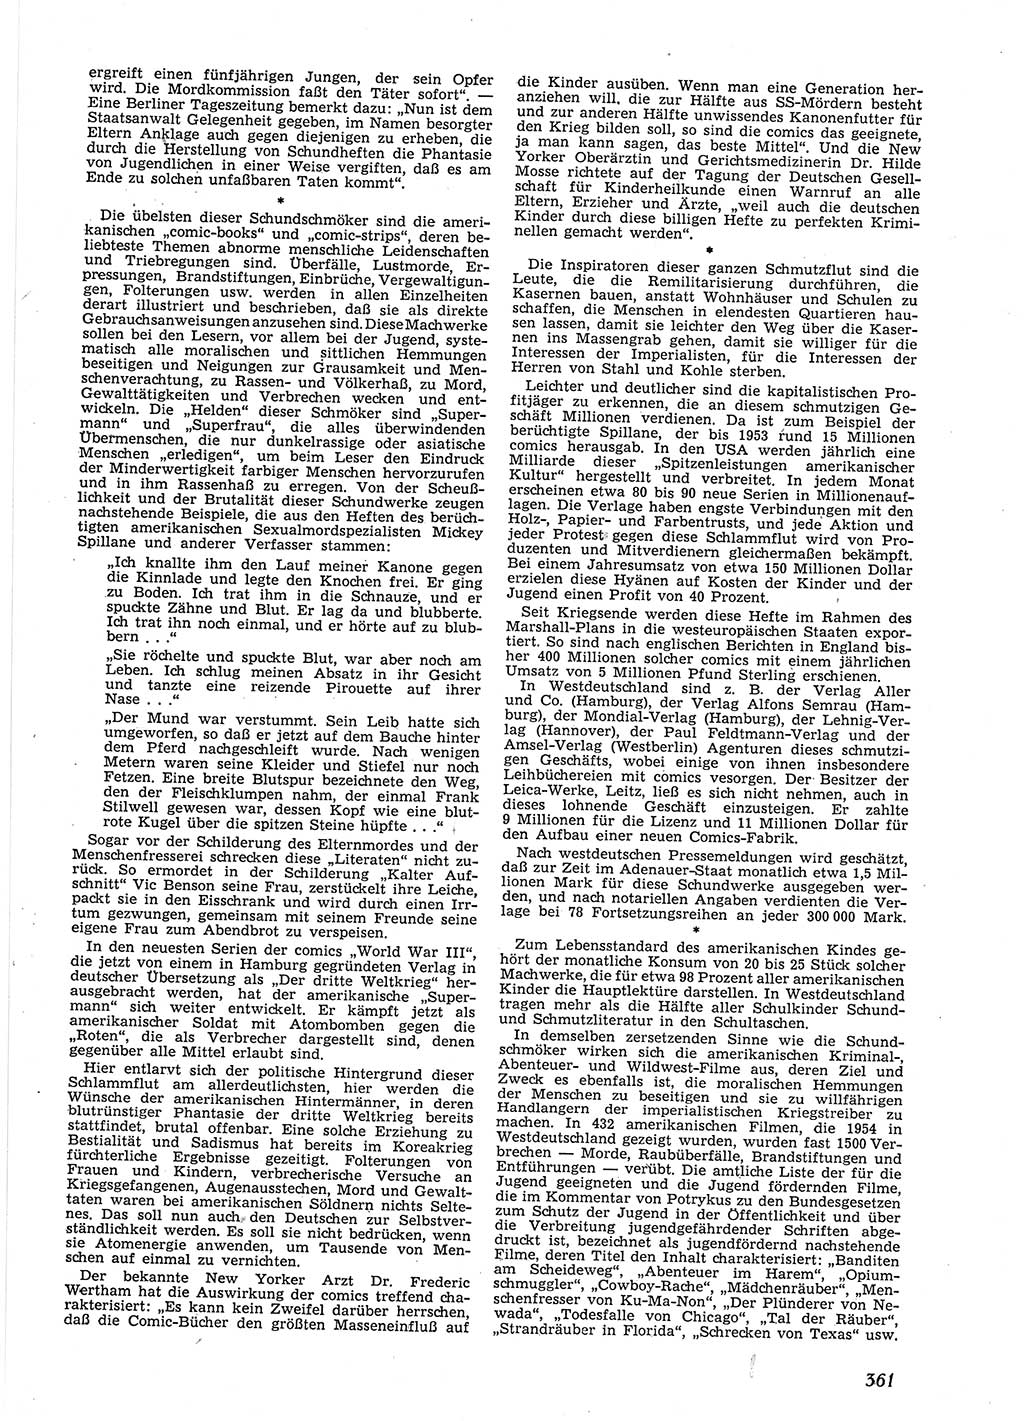 Neue Justiz (NJ), Zeitschrift für Recht und Rechtswissenschaft [Deutsche Demokratische Republik (DDR)], 9. Jahrgang 1955, Seite 361 (NJ DDR 1955, S. 361)